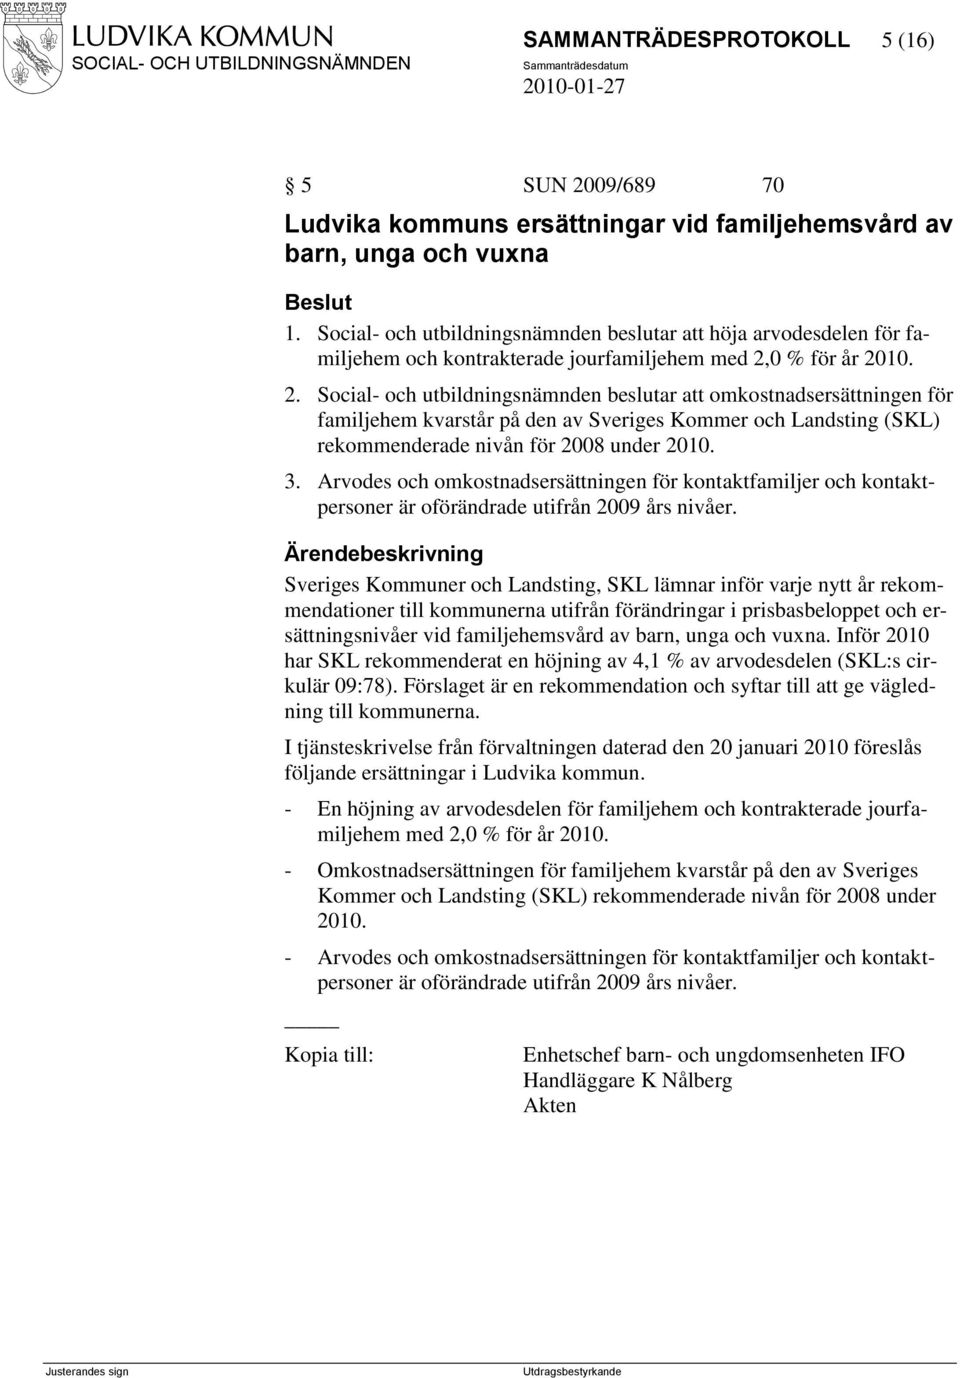 0 % för år 2010. 2. Social- och utbildningsnämnden beslutar att omkostnadsersättningen för familjehem kvarstår på den av Sveriges Kommer och Landsting (SKL) rekommenderade nivån för 2008 under 2010.